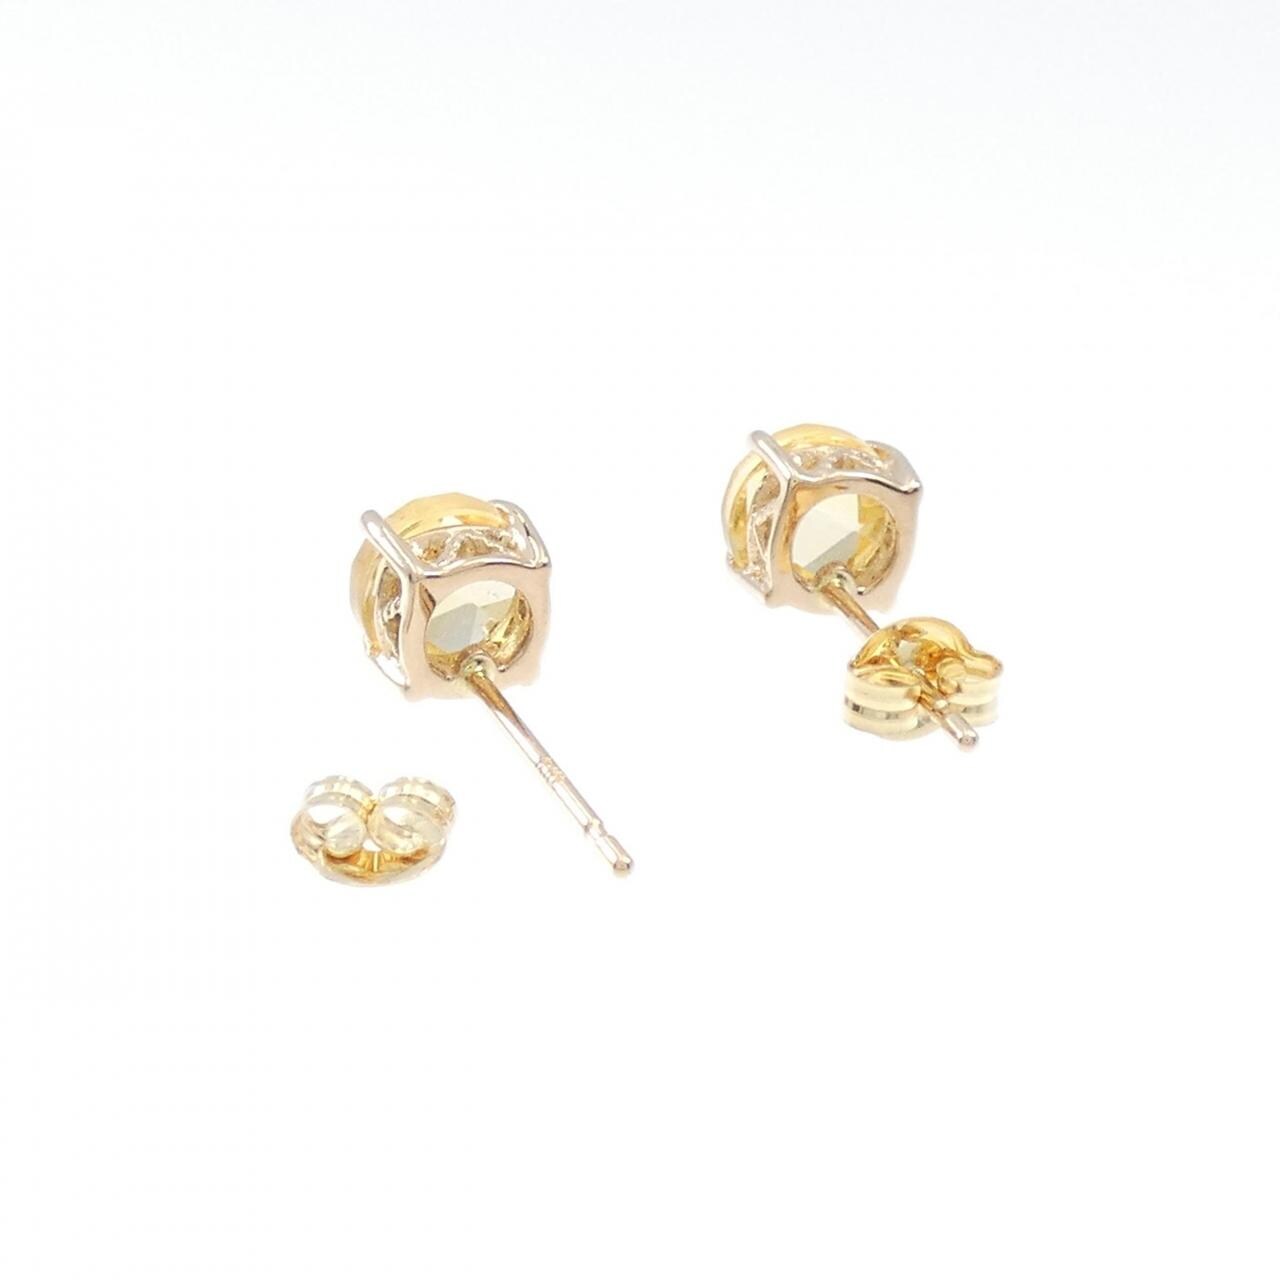 K18YG citrine earrings